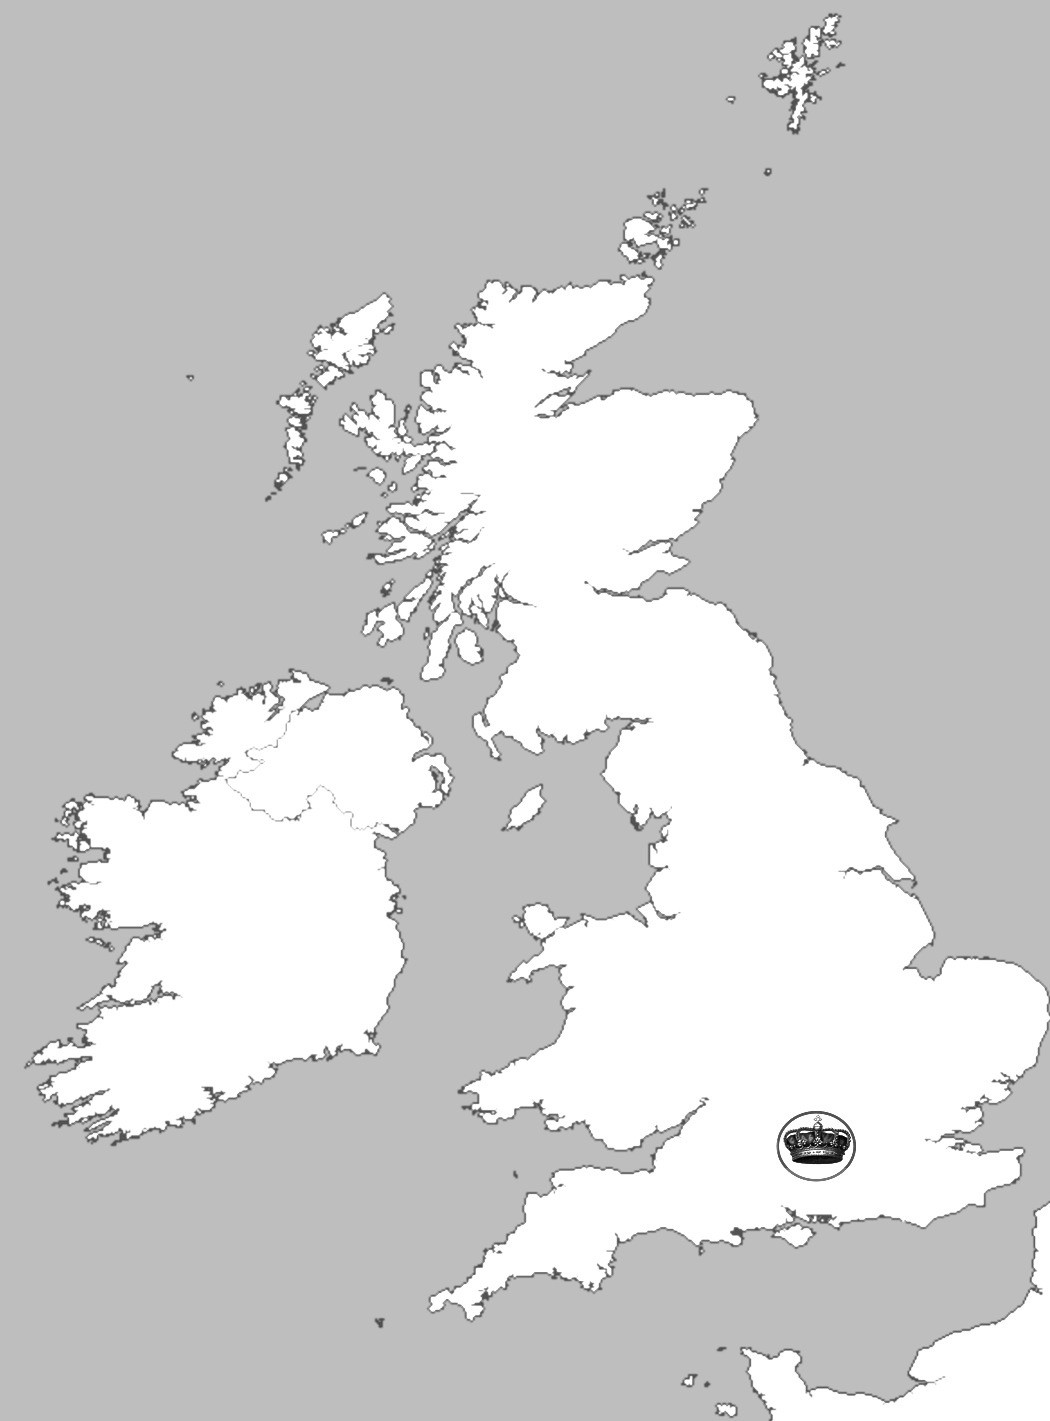 Великобритания на контурной карте. Контруная карт авлеикобритании. Карта Великобритании контур. Карта Англии раскраска. Контурная карта Британии.